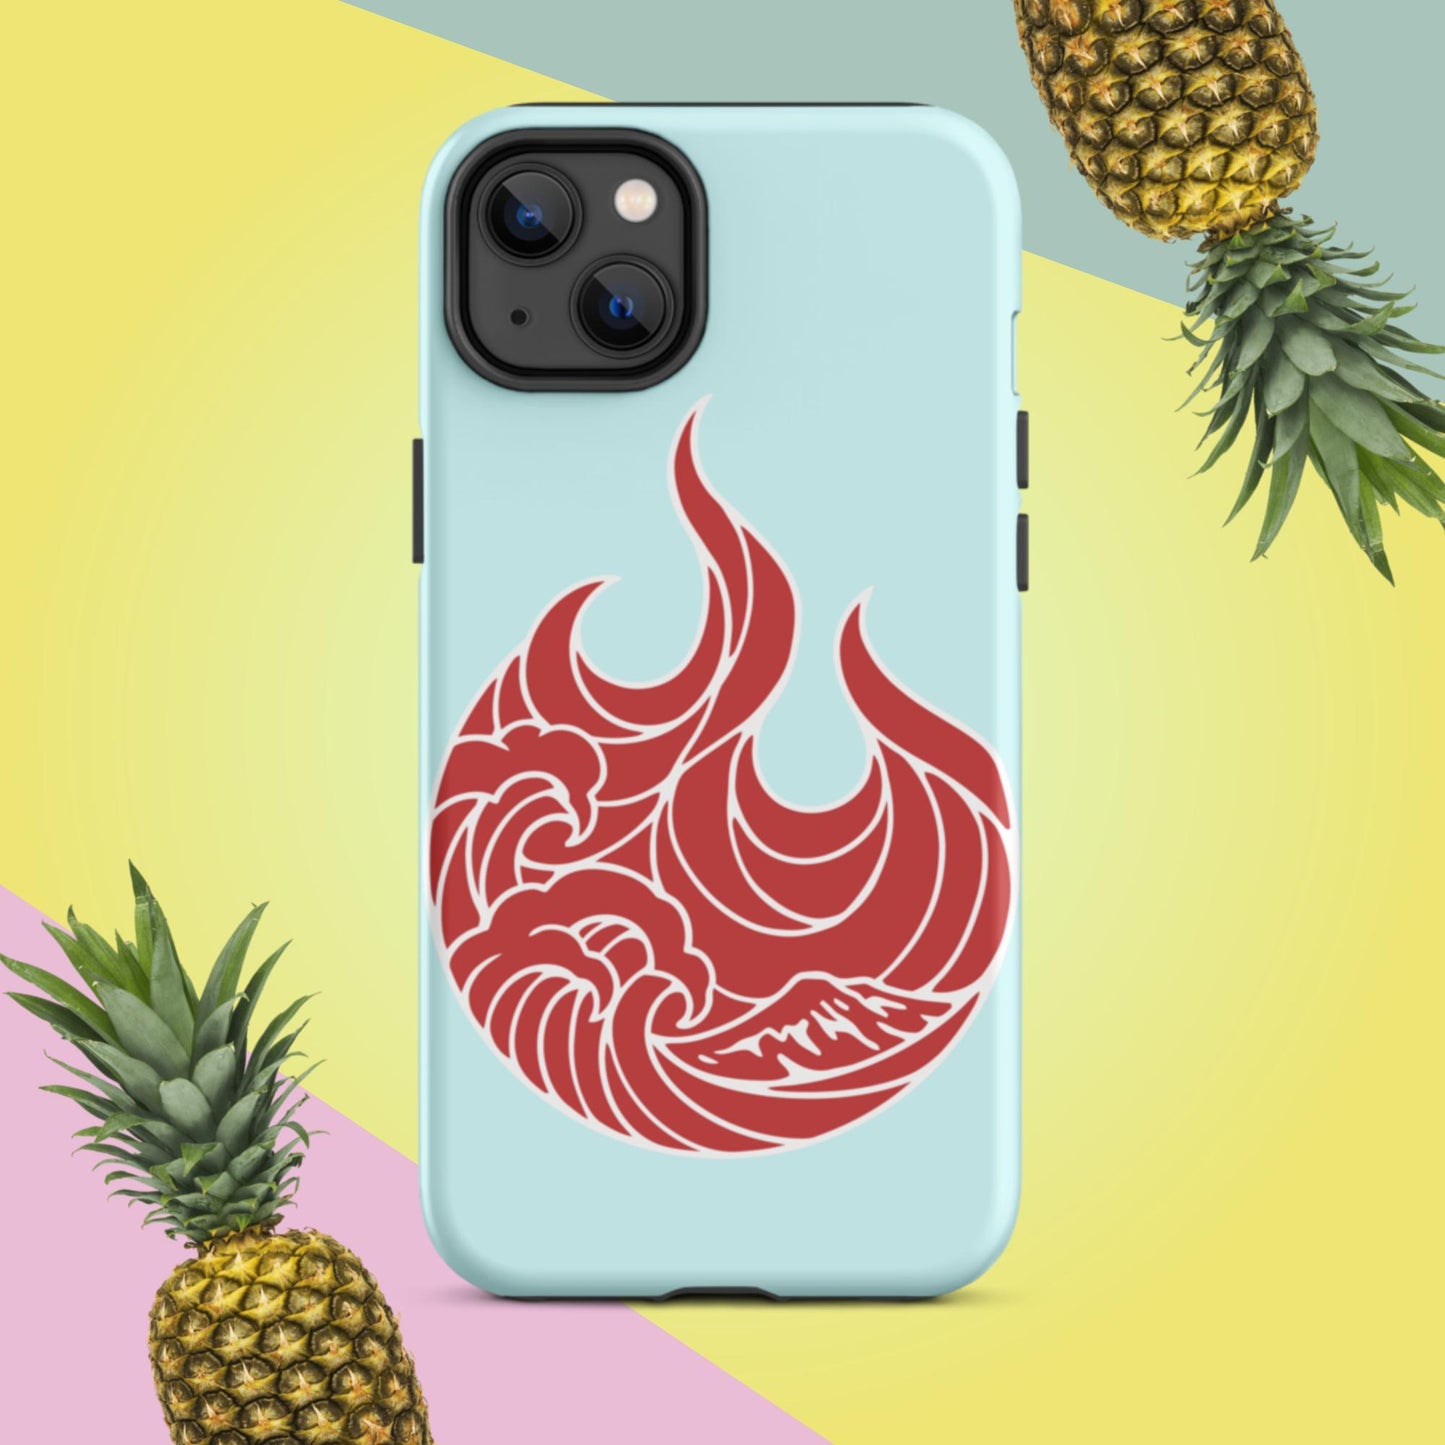 Big Fire Tough iPhone case